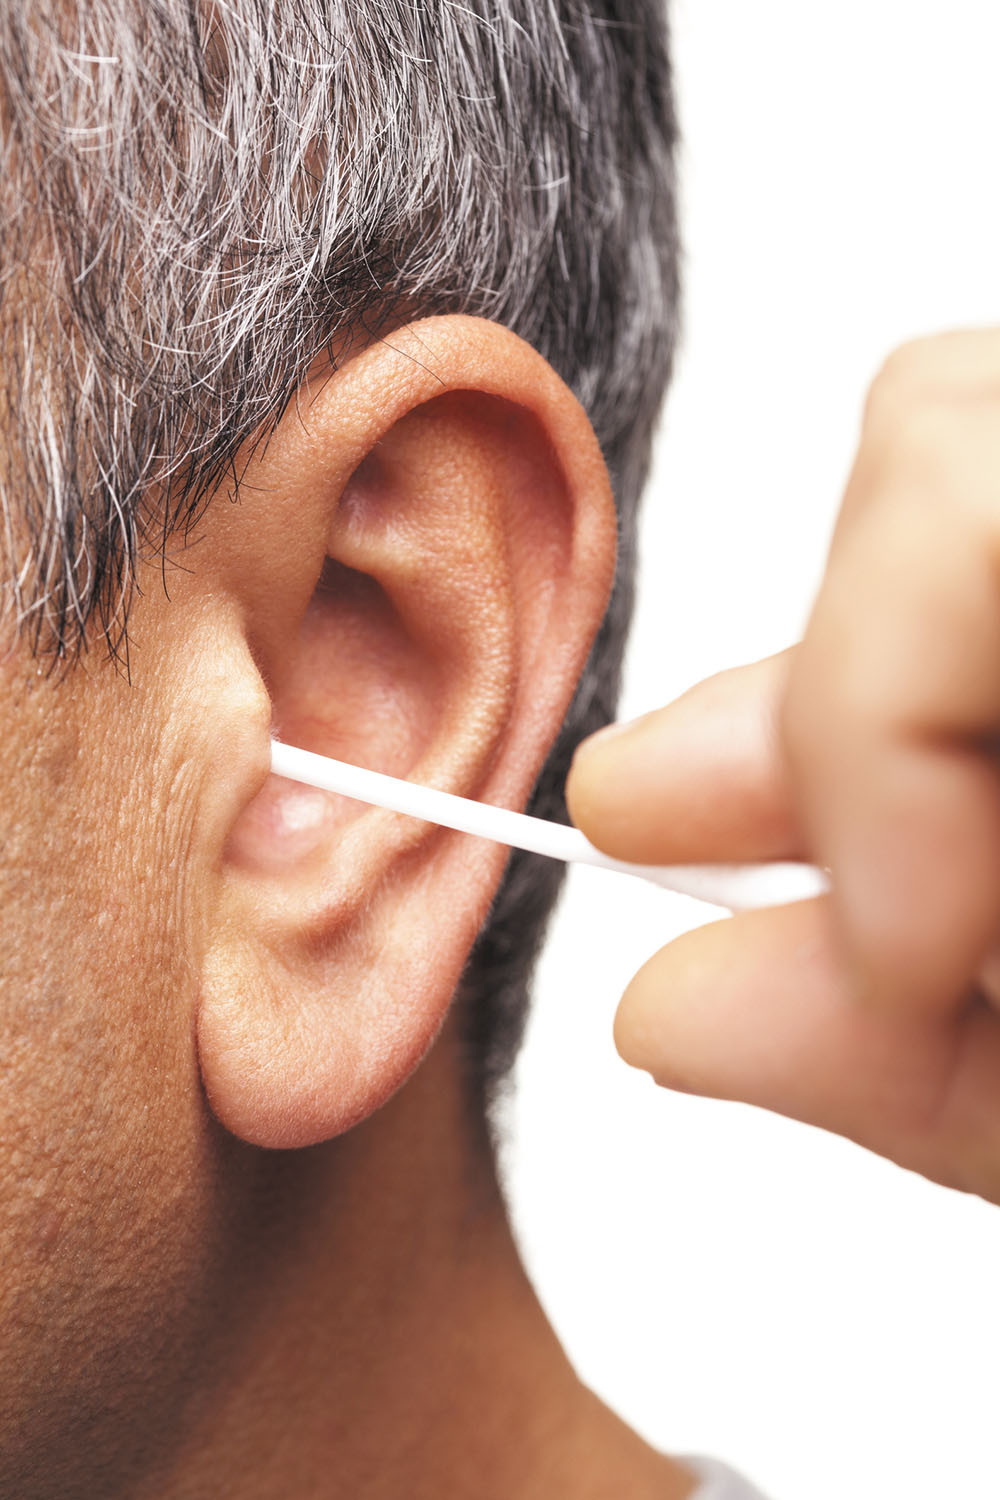 using showerhead to remove ear wax